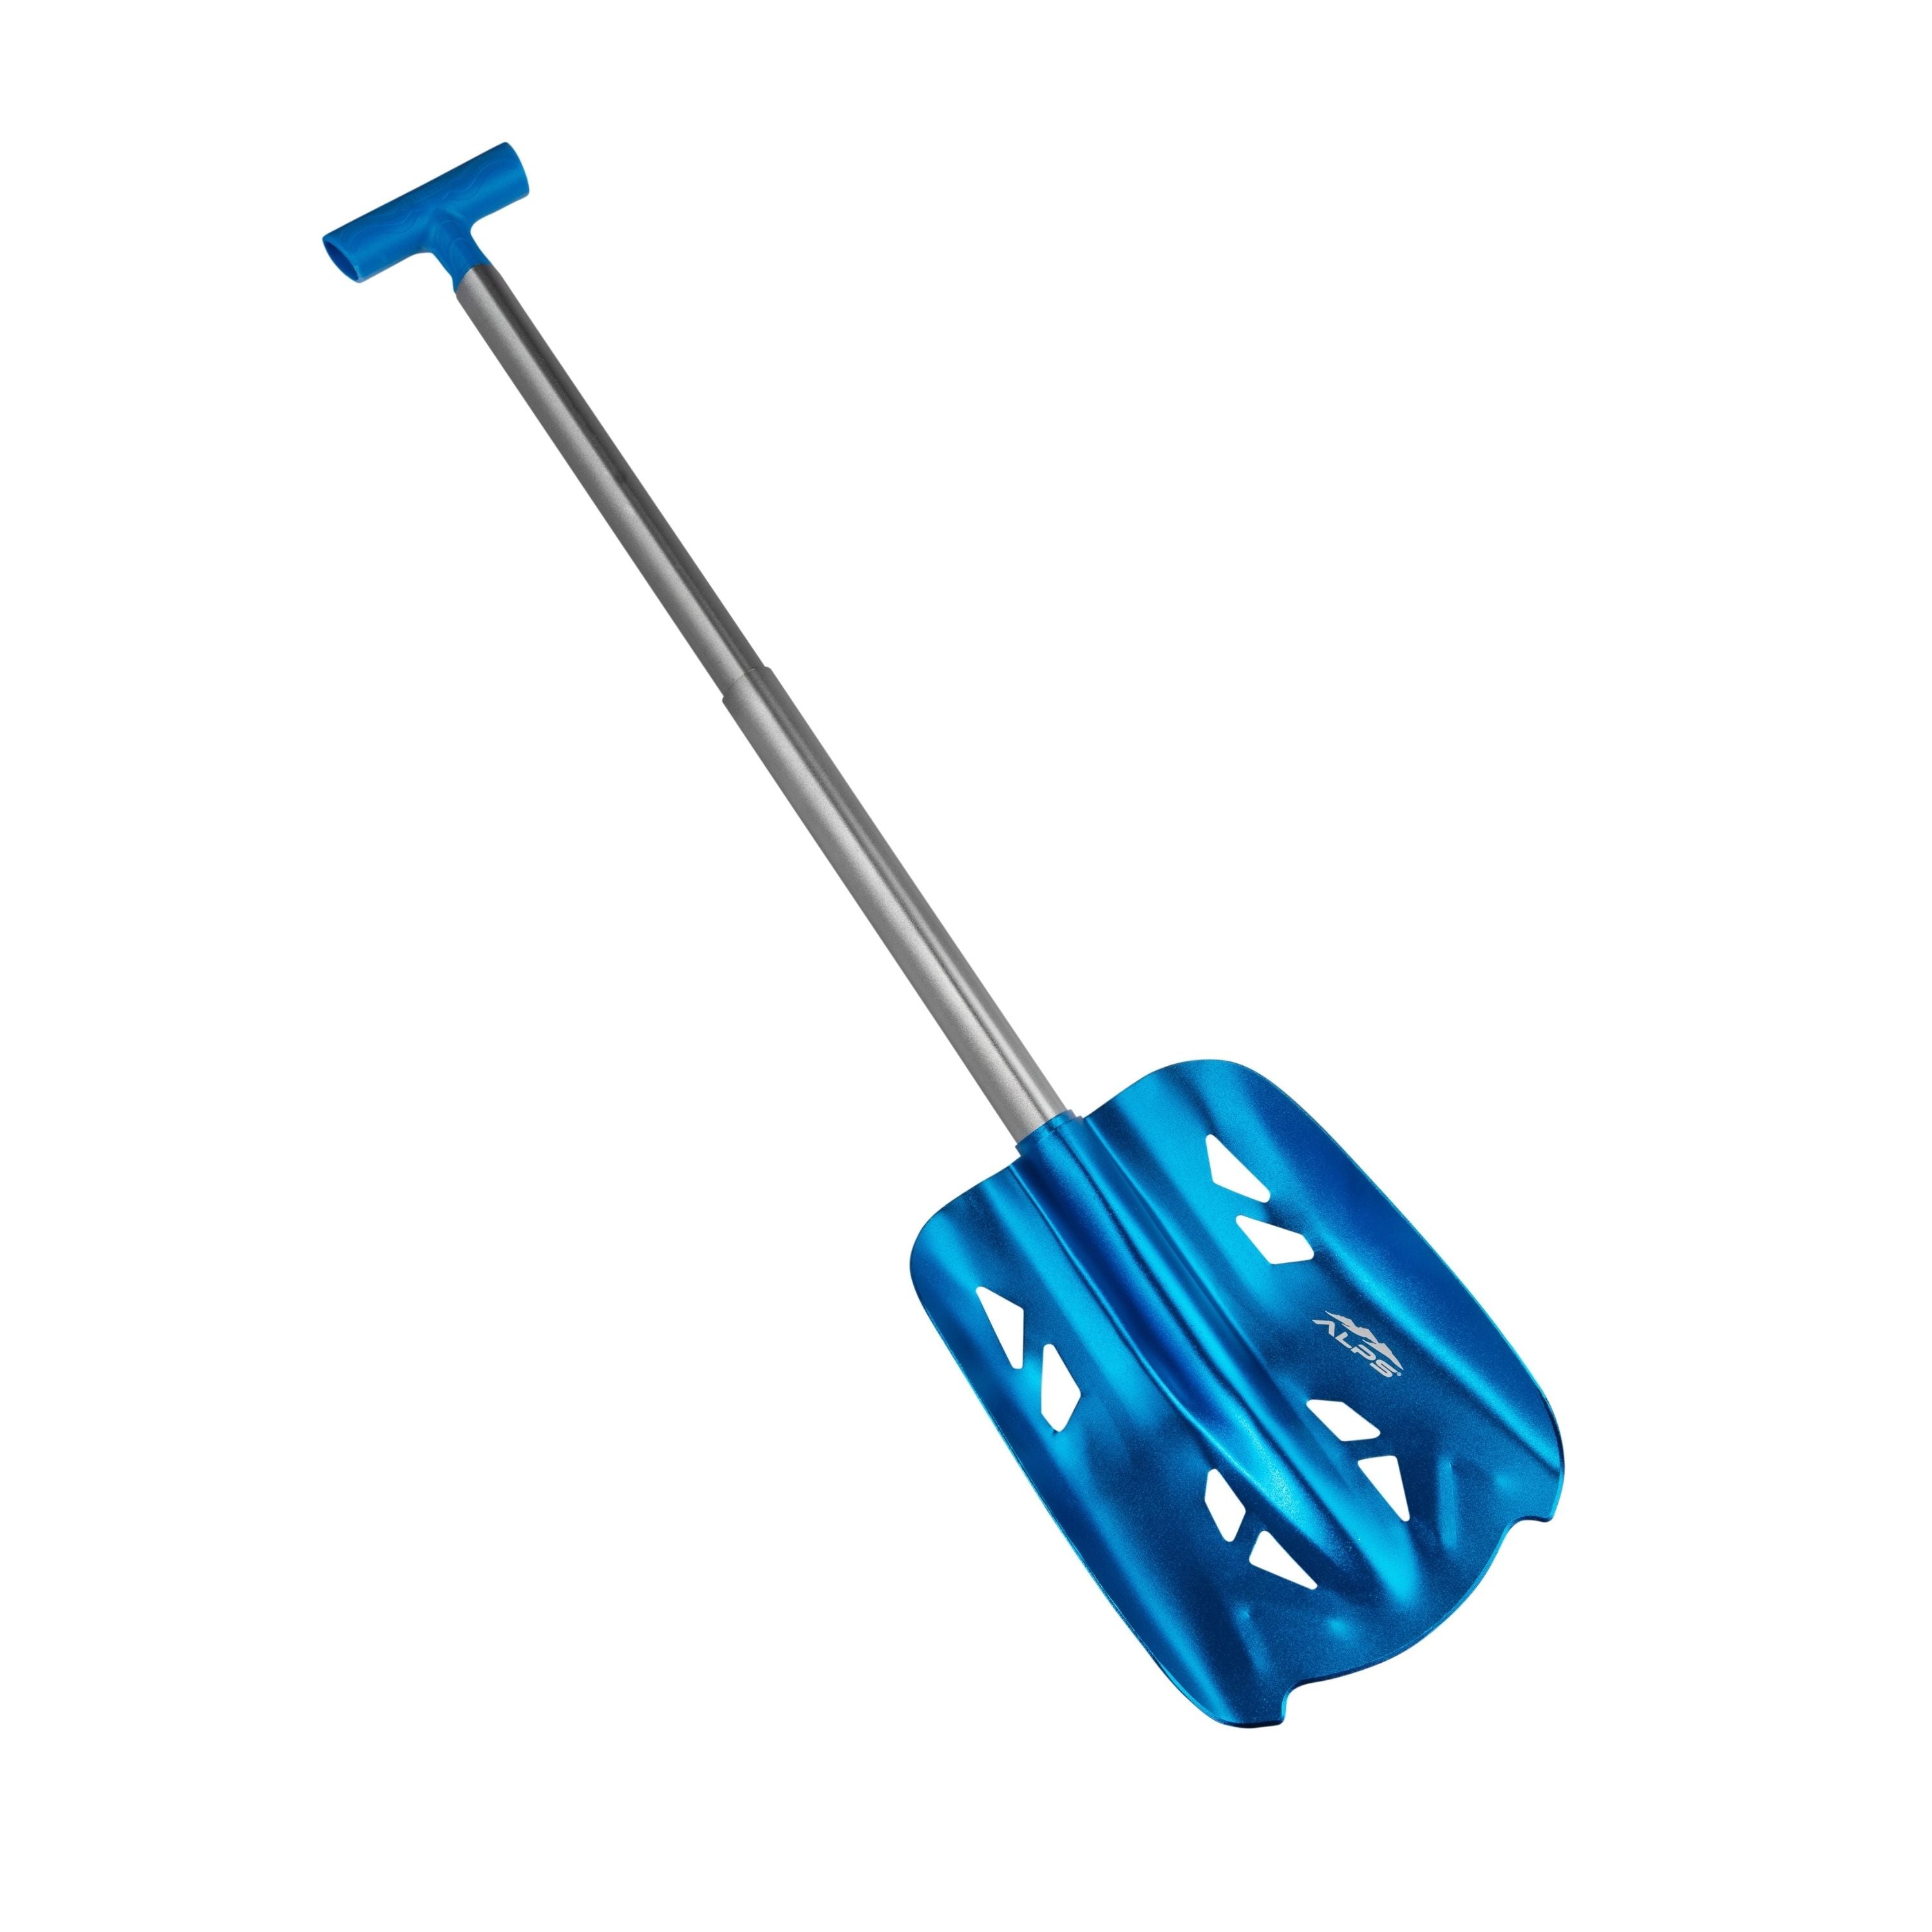 Utilitary compact shovel